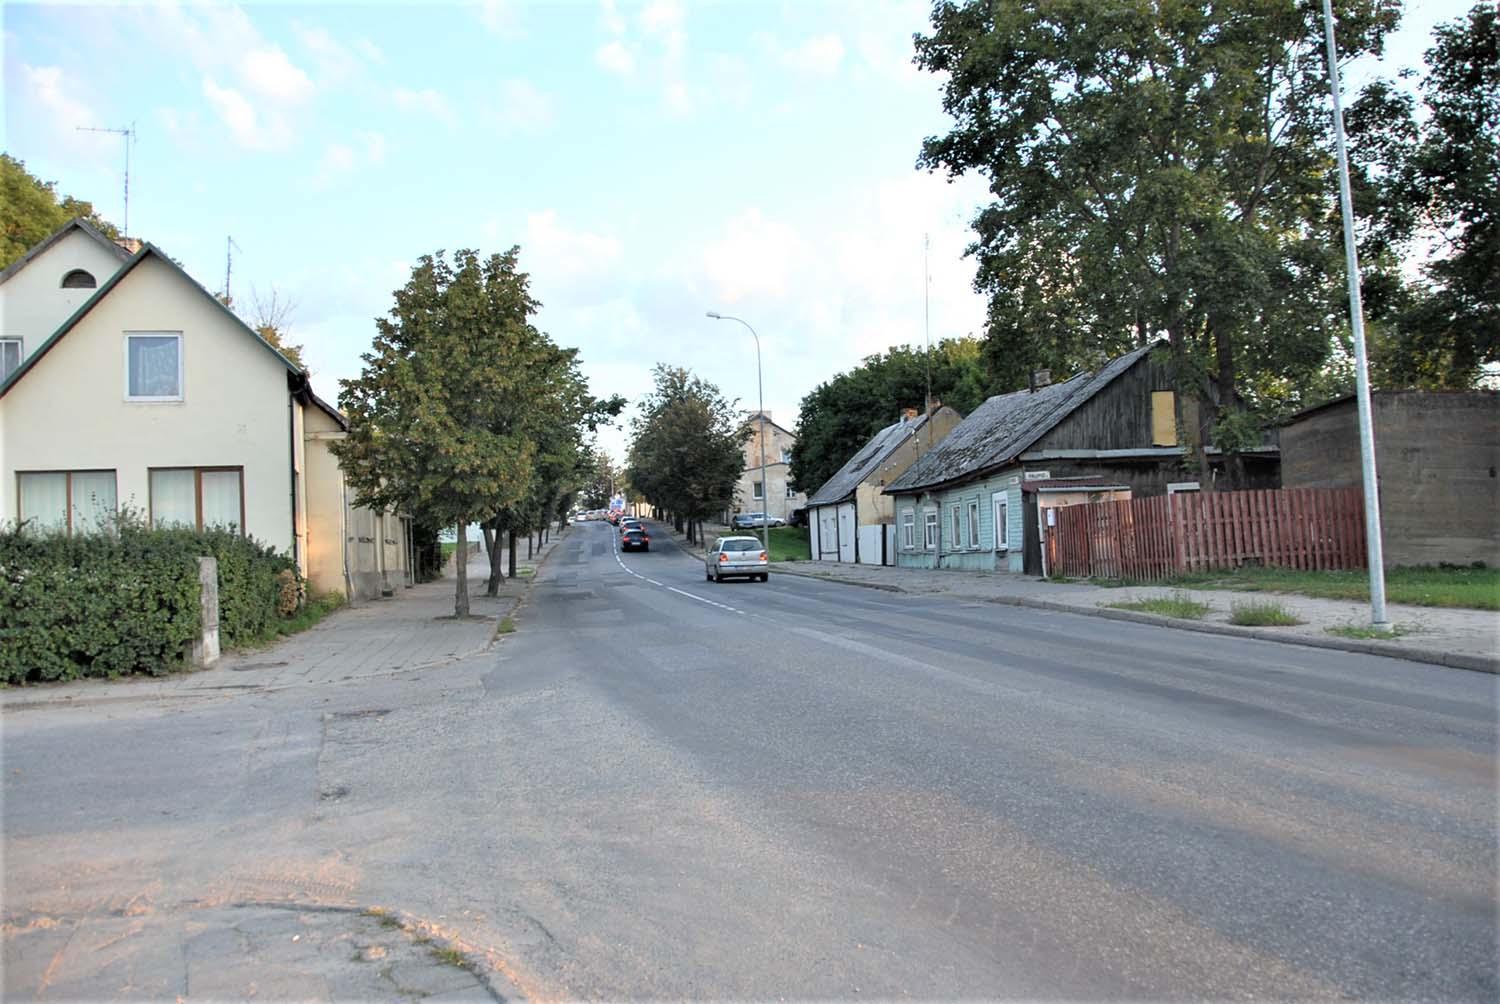 Artėja Vilniaus gatvės remontas? / Gedimino Nemunaičio nuotr. Ši Vilniaus gatvės atkarpa jau labai seniai šaukiasi remonto.